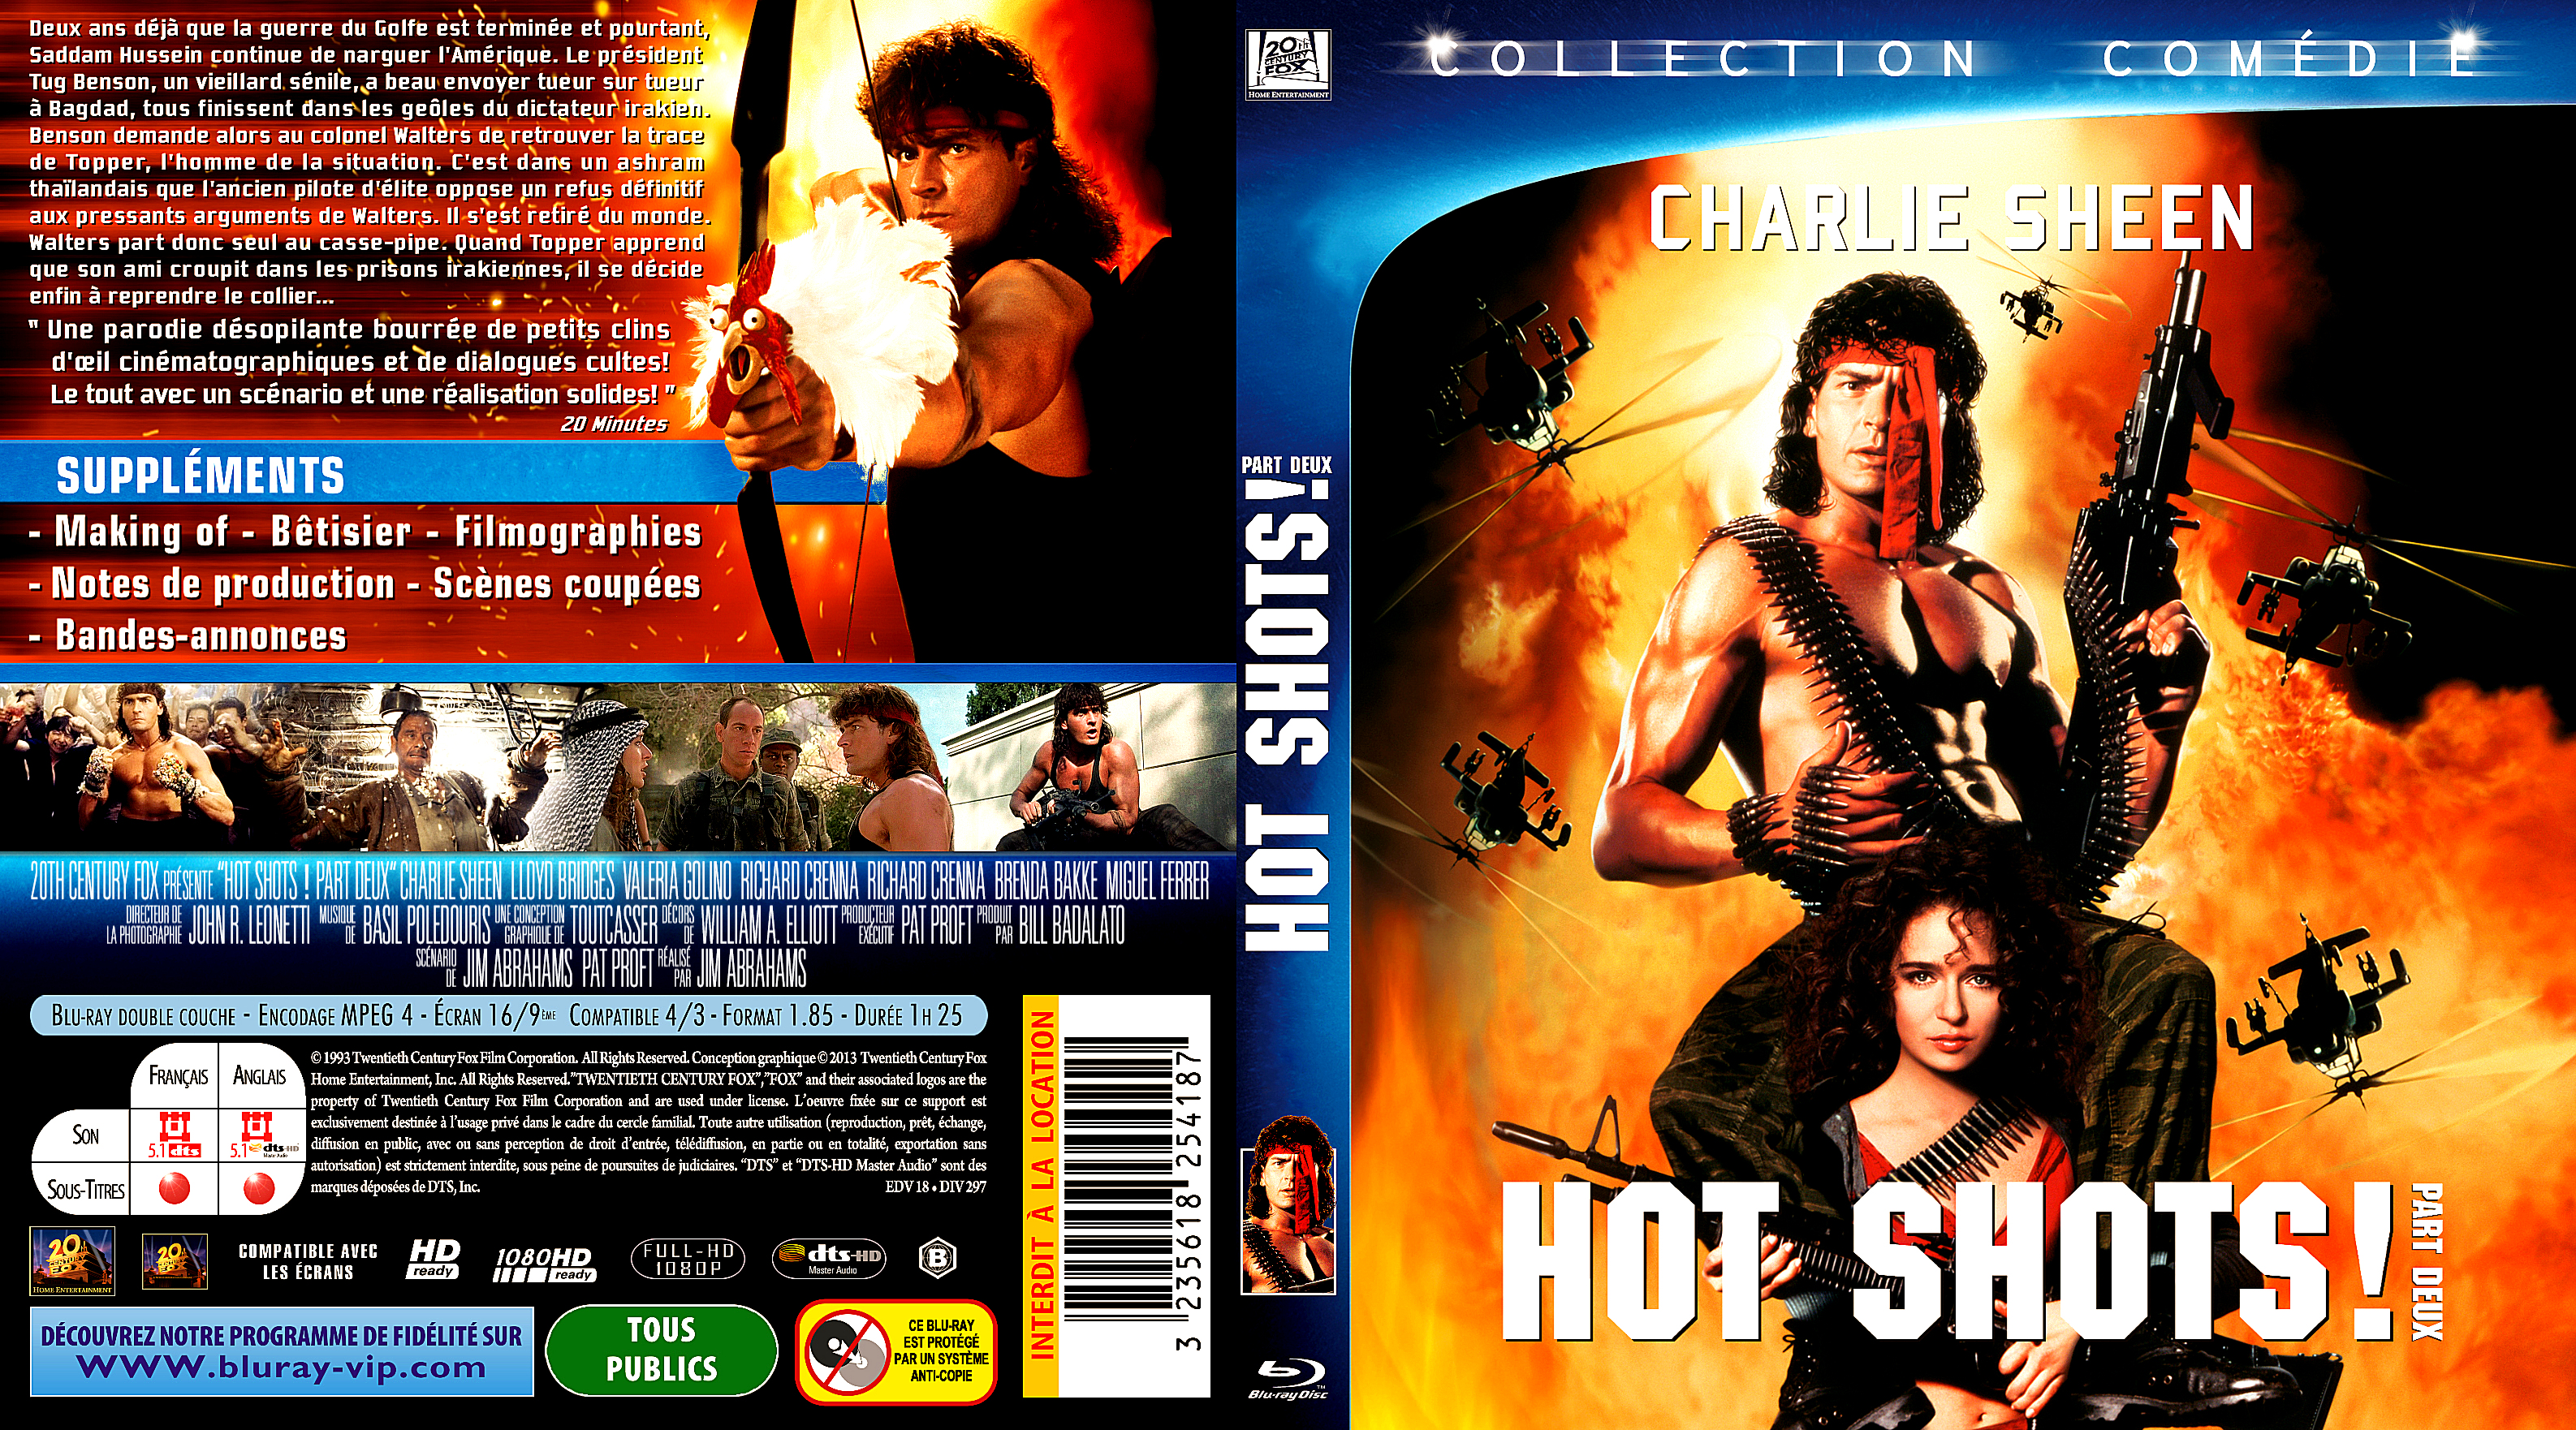 Jaquette DVD Hot shots 2 custom (BLU-RAY)